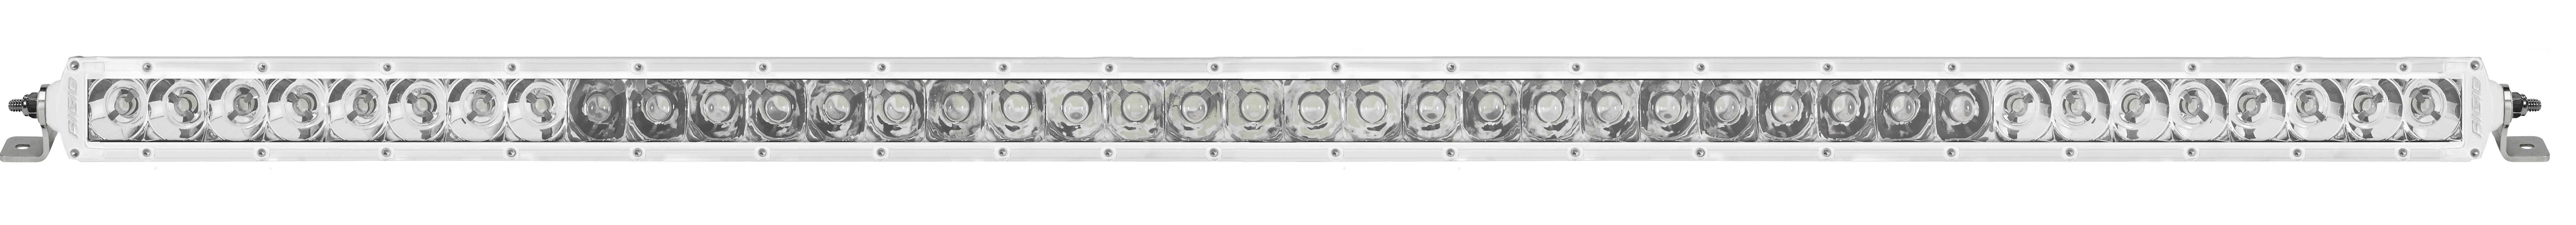 RIGID SR-Series PRO LED Light Bar Spot/Flood Combo 40 Inch White Housing